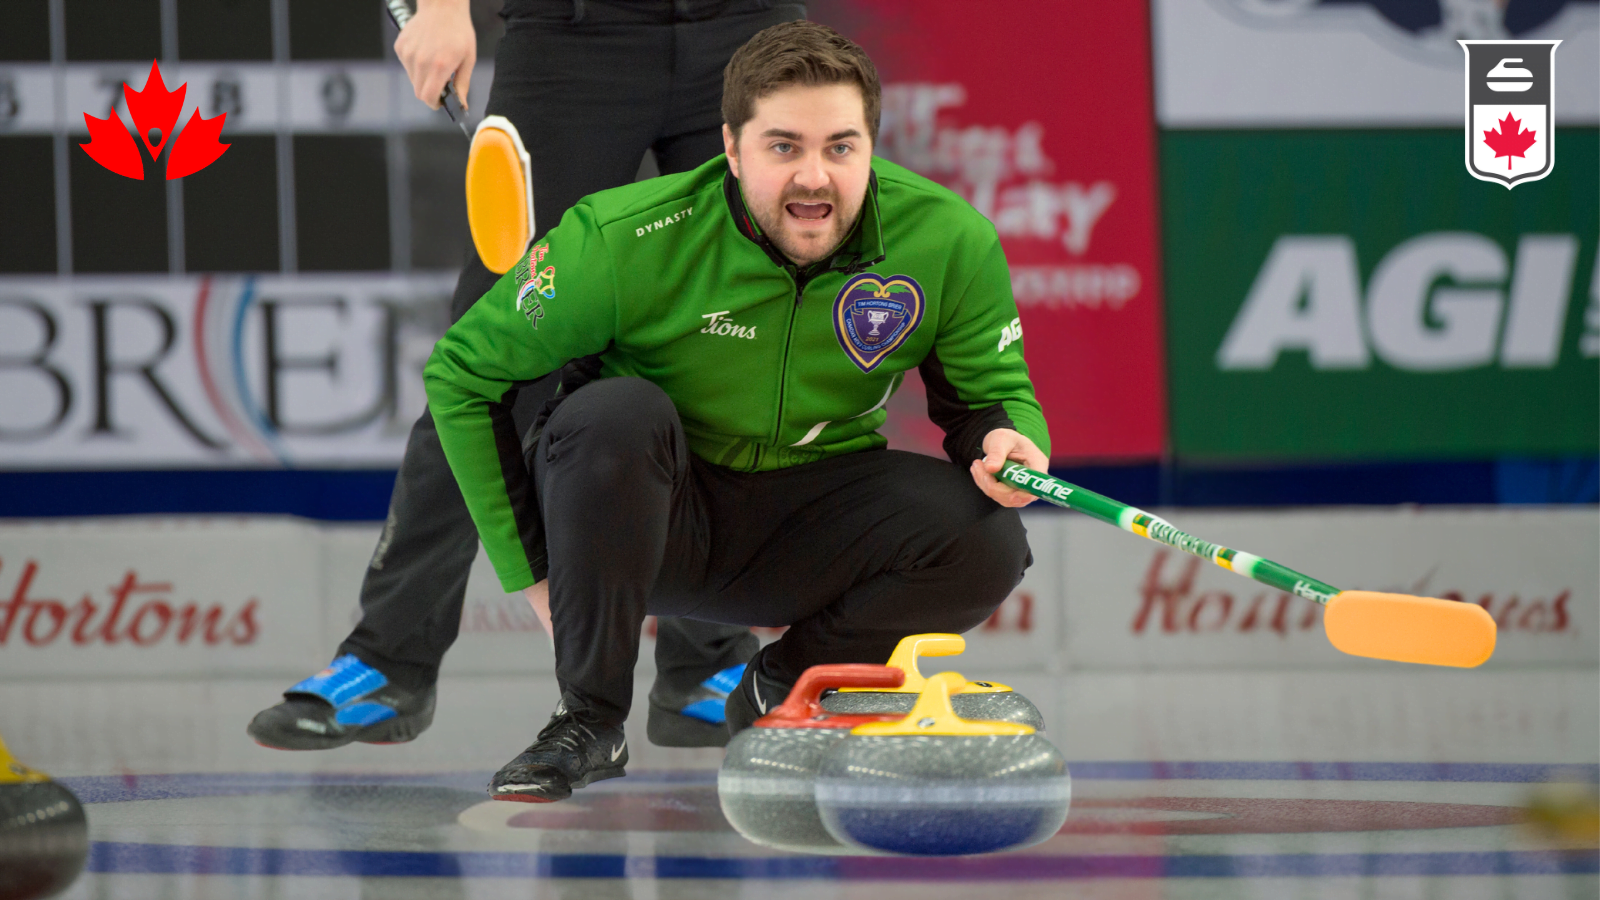 Athlete Rep Spotlight: Matt Dunstone, Curling